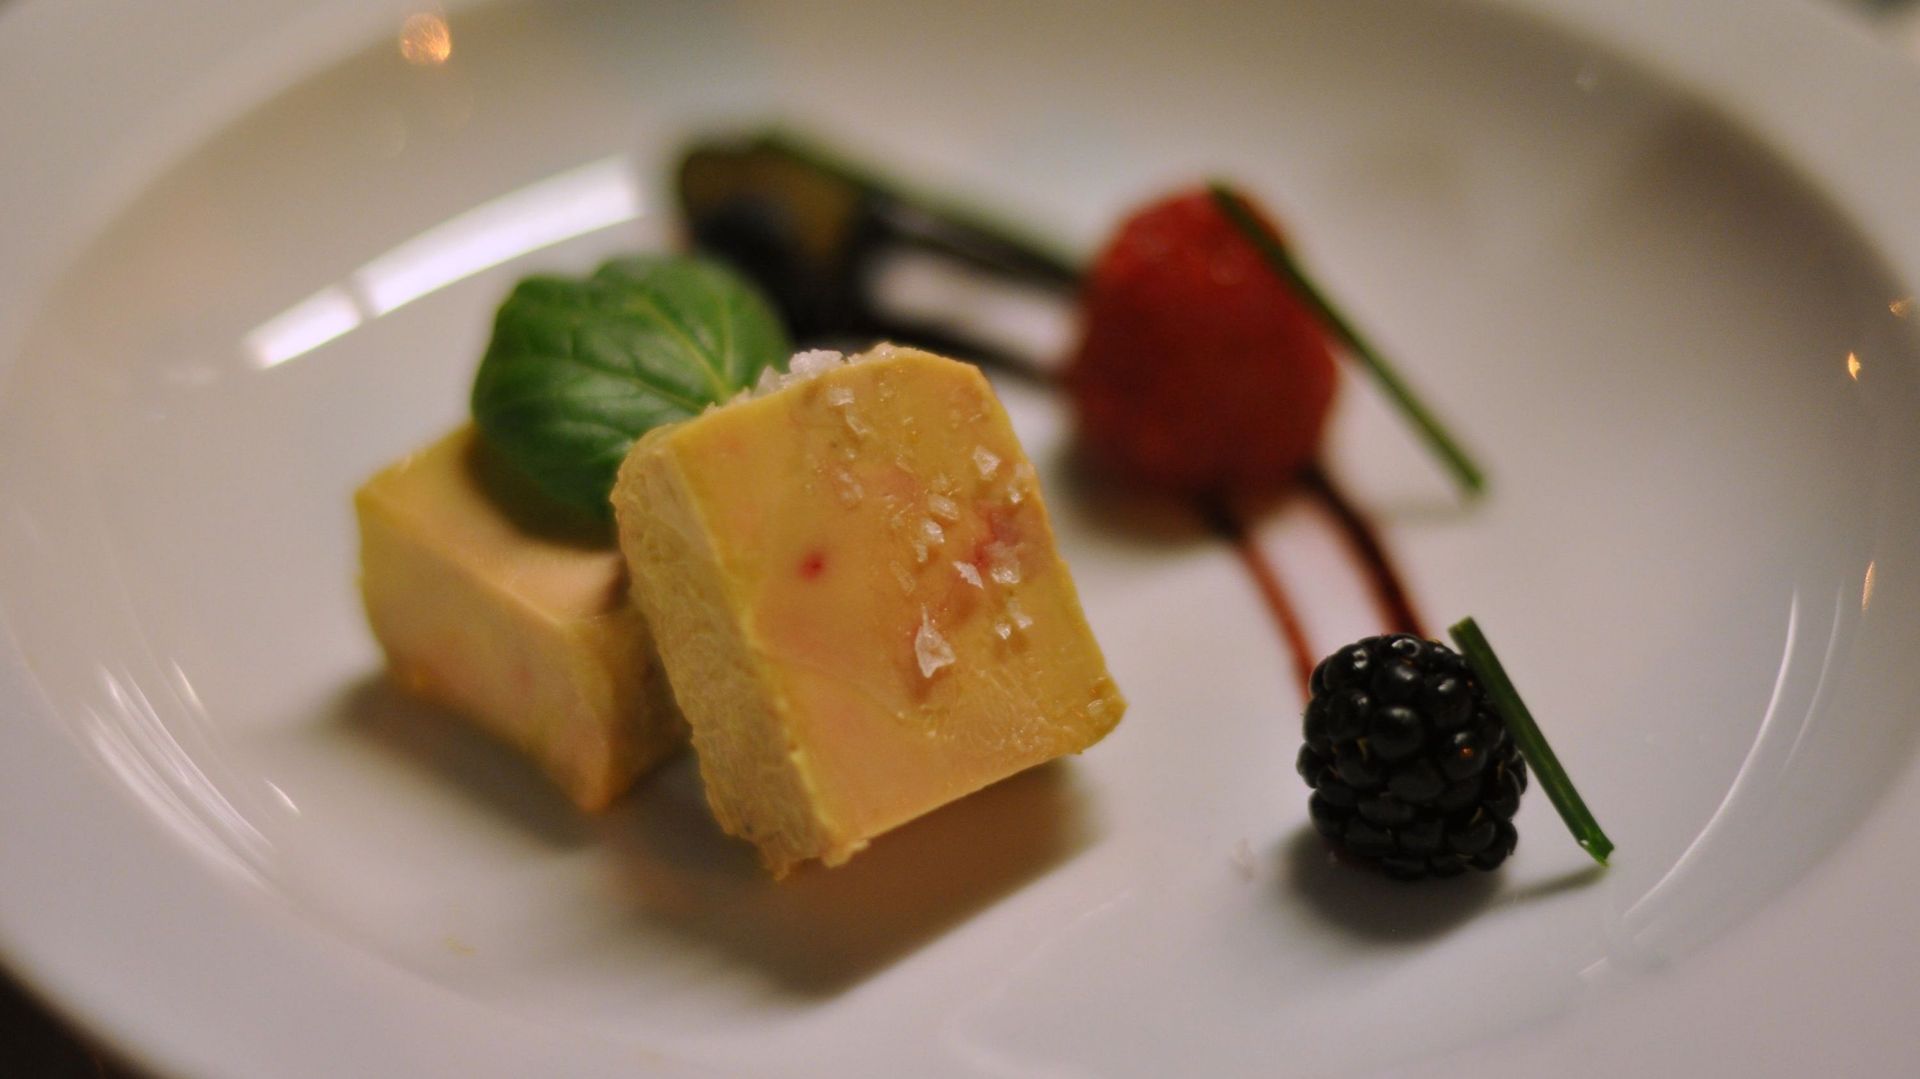 Les Belges sont parmi les plus gros consommateurs de foie gras au monde